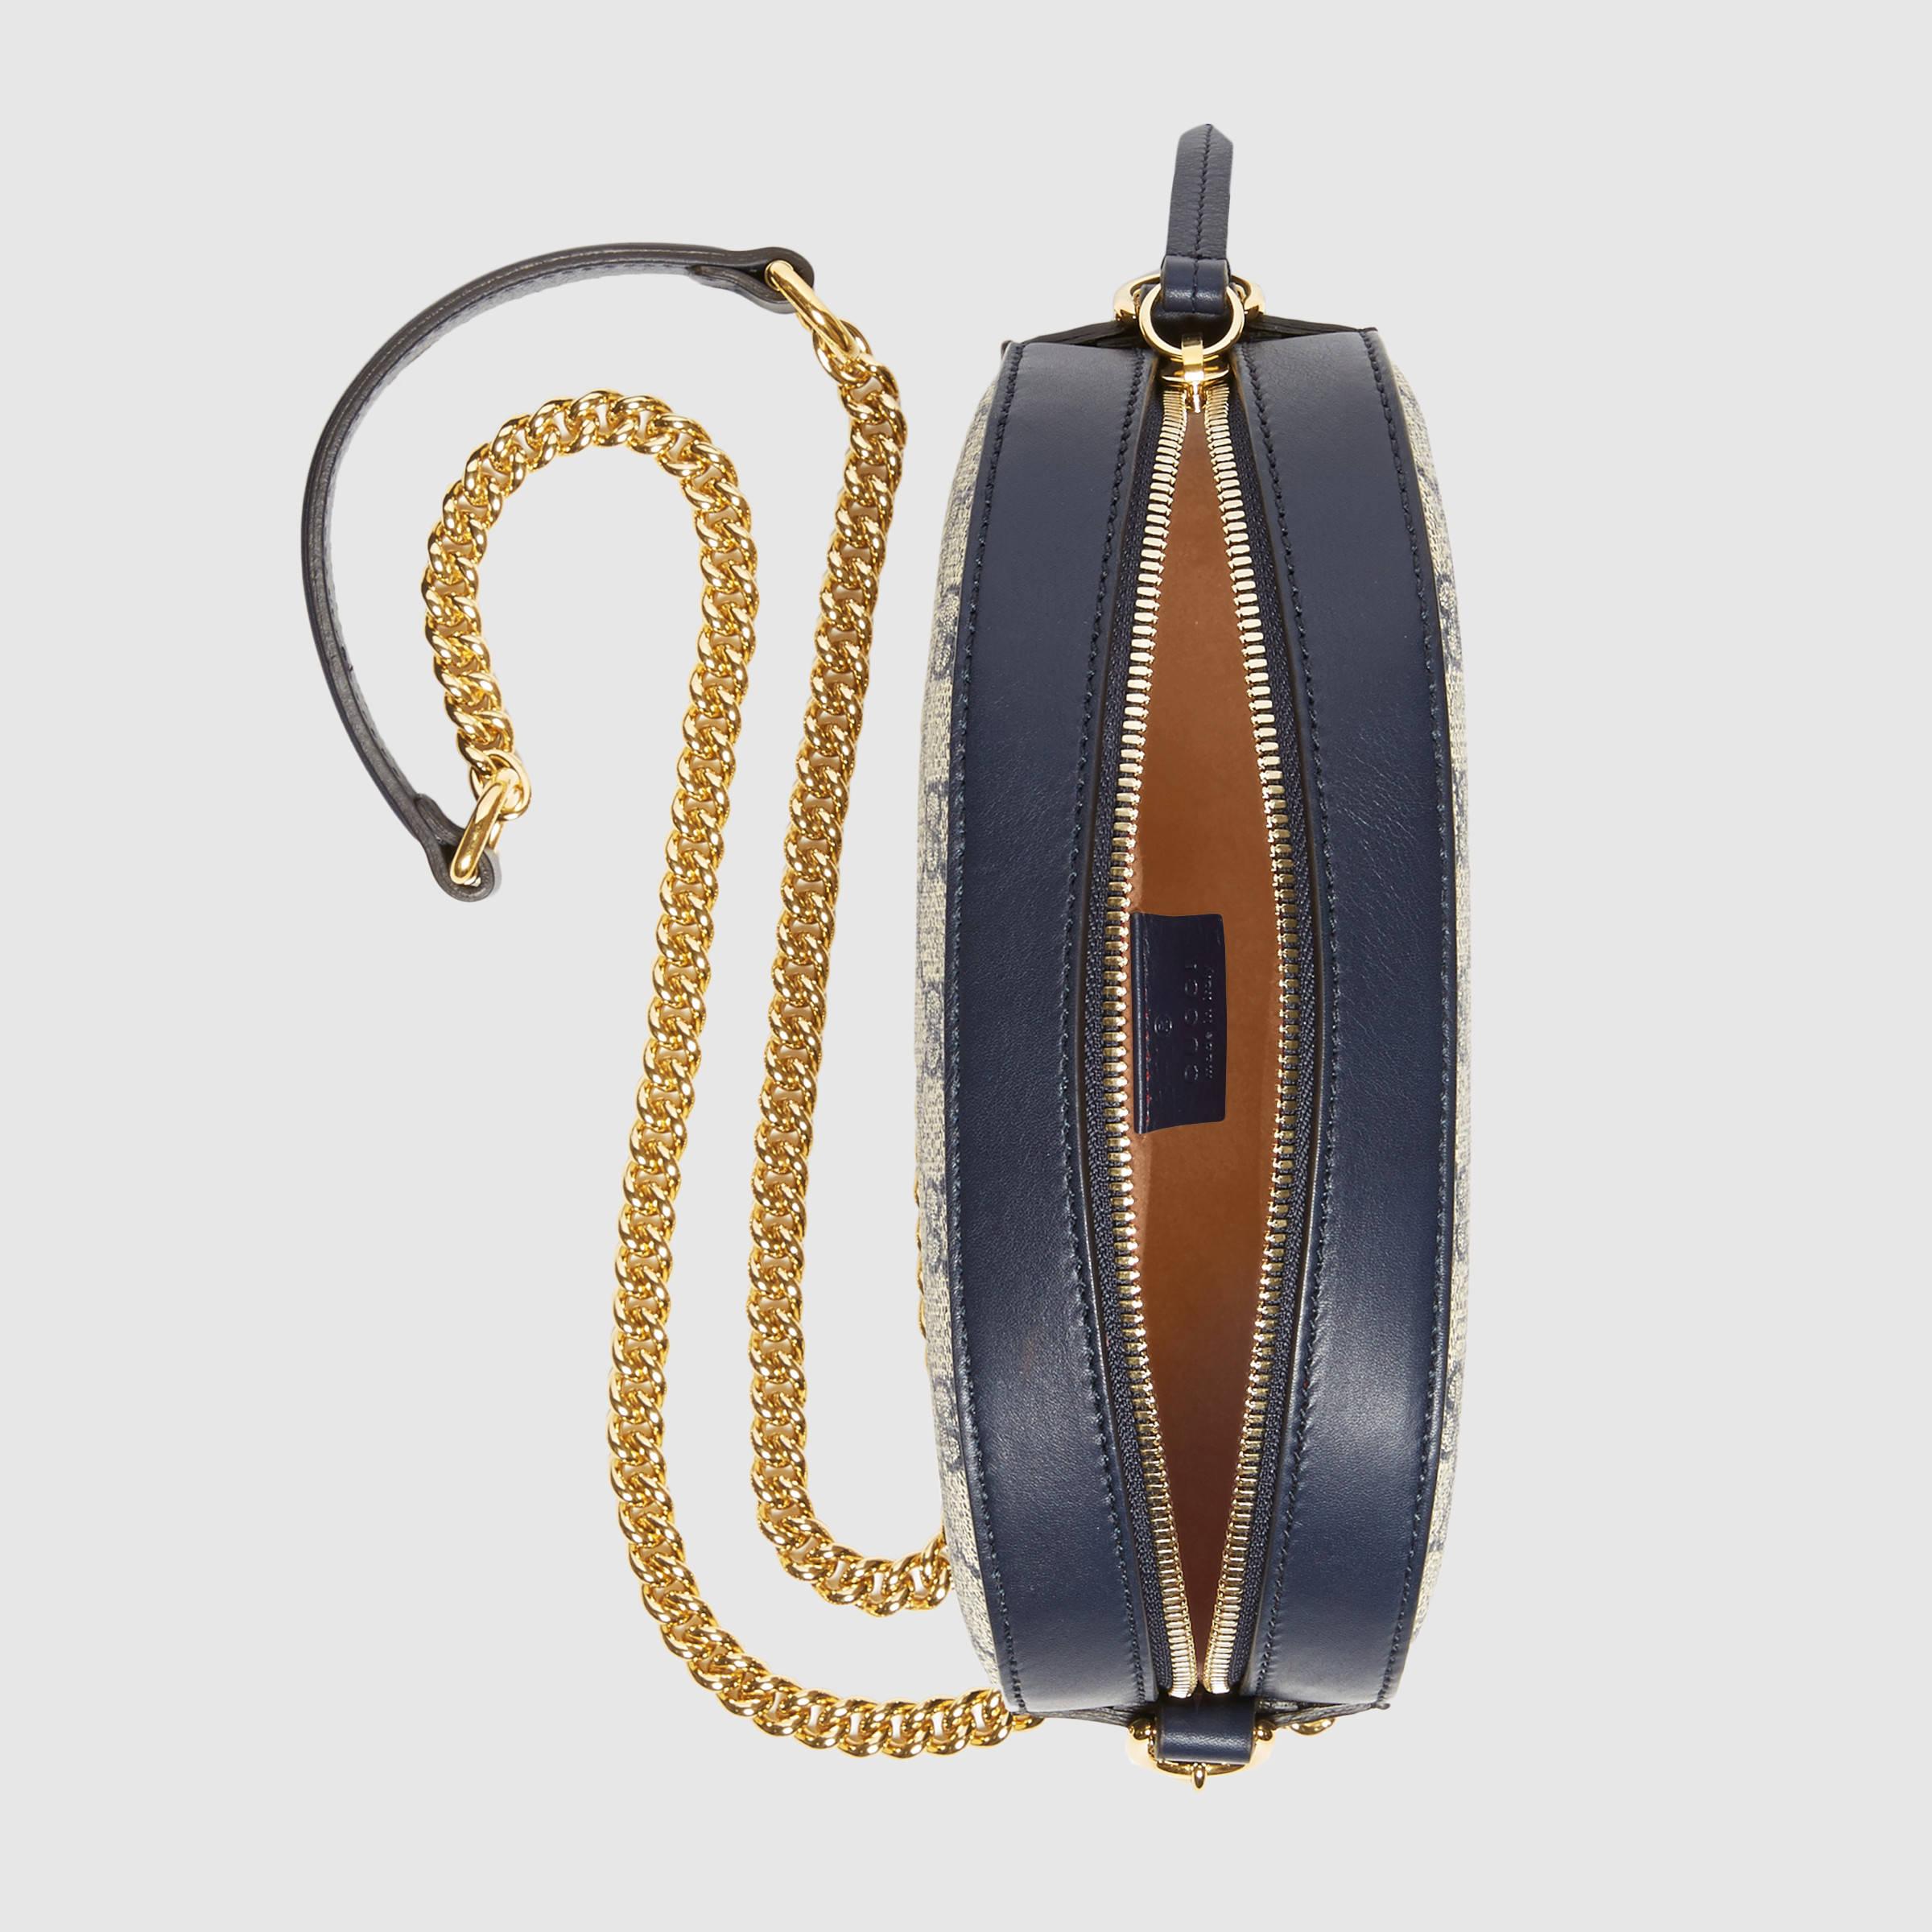 Gucci Canvas Gg Supreme Mini Chain Bag in Gray - Lyst